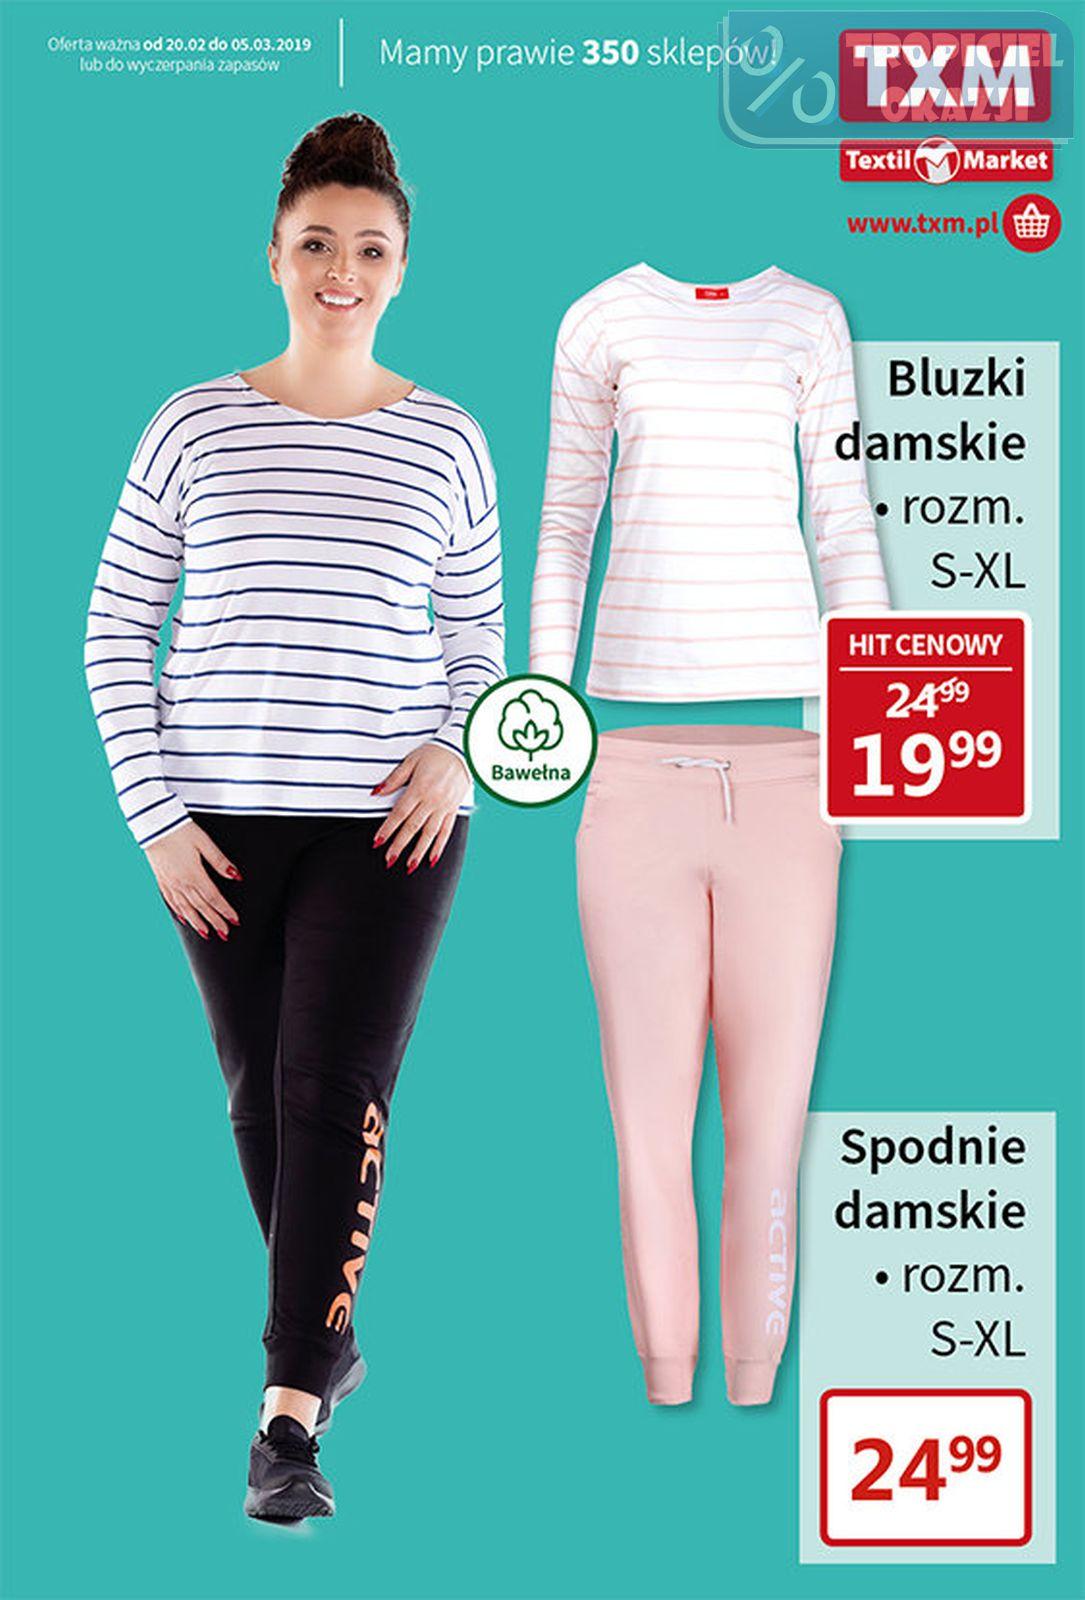 Gazetka promocyjna Textil Market do 05/03/2019 str.1